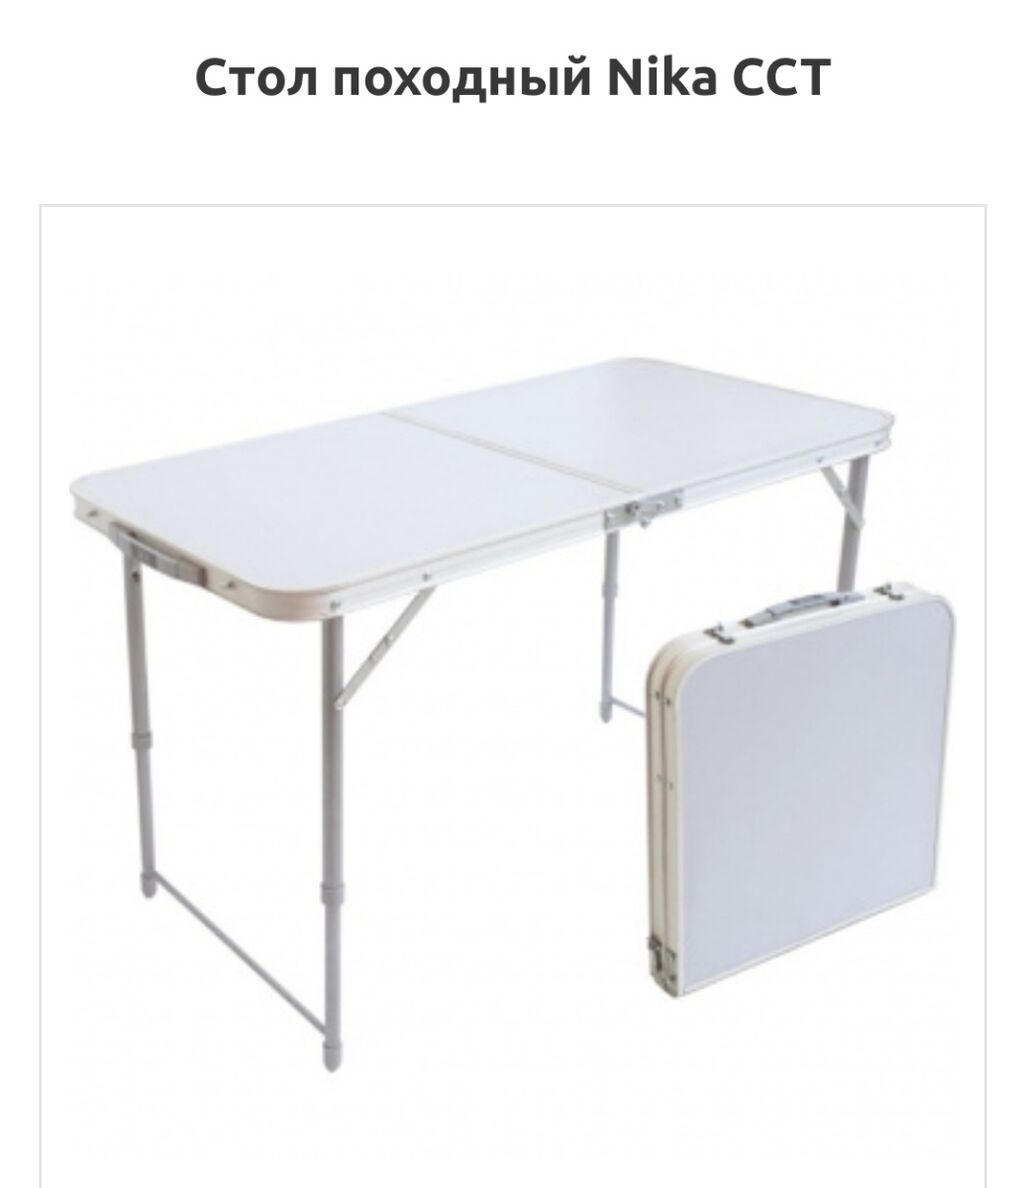 Складные столы для пикников - купить в интернет-магазине kormstroytorg.ru Цена от 1 руб.